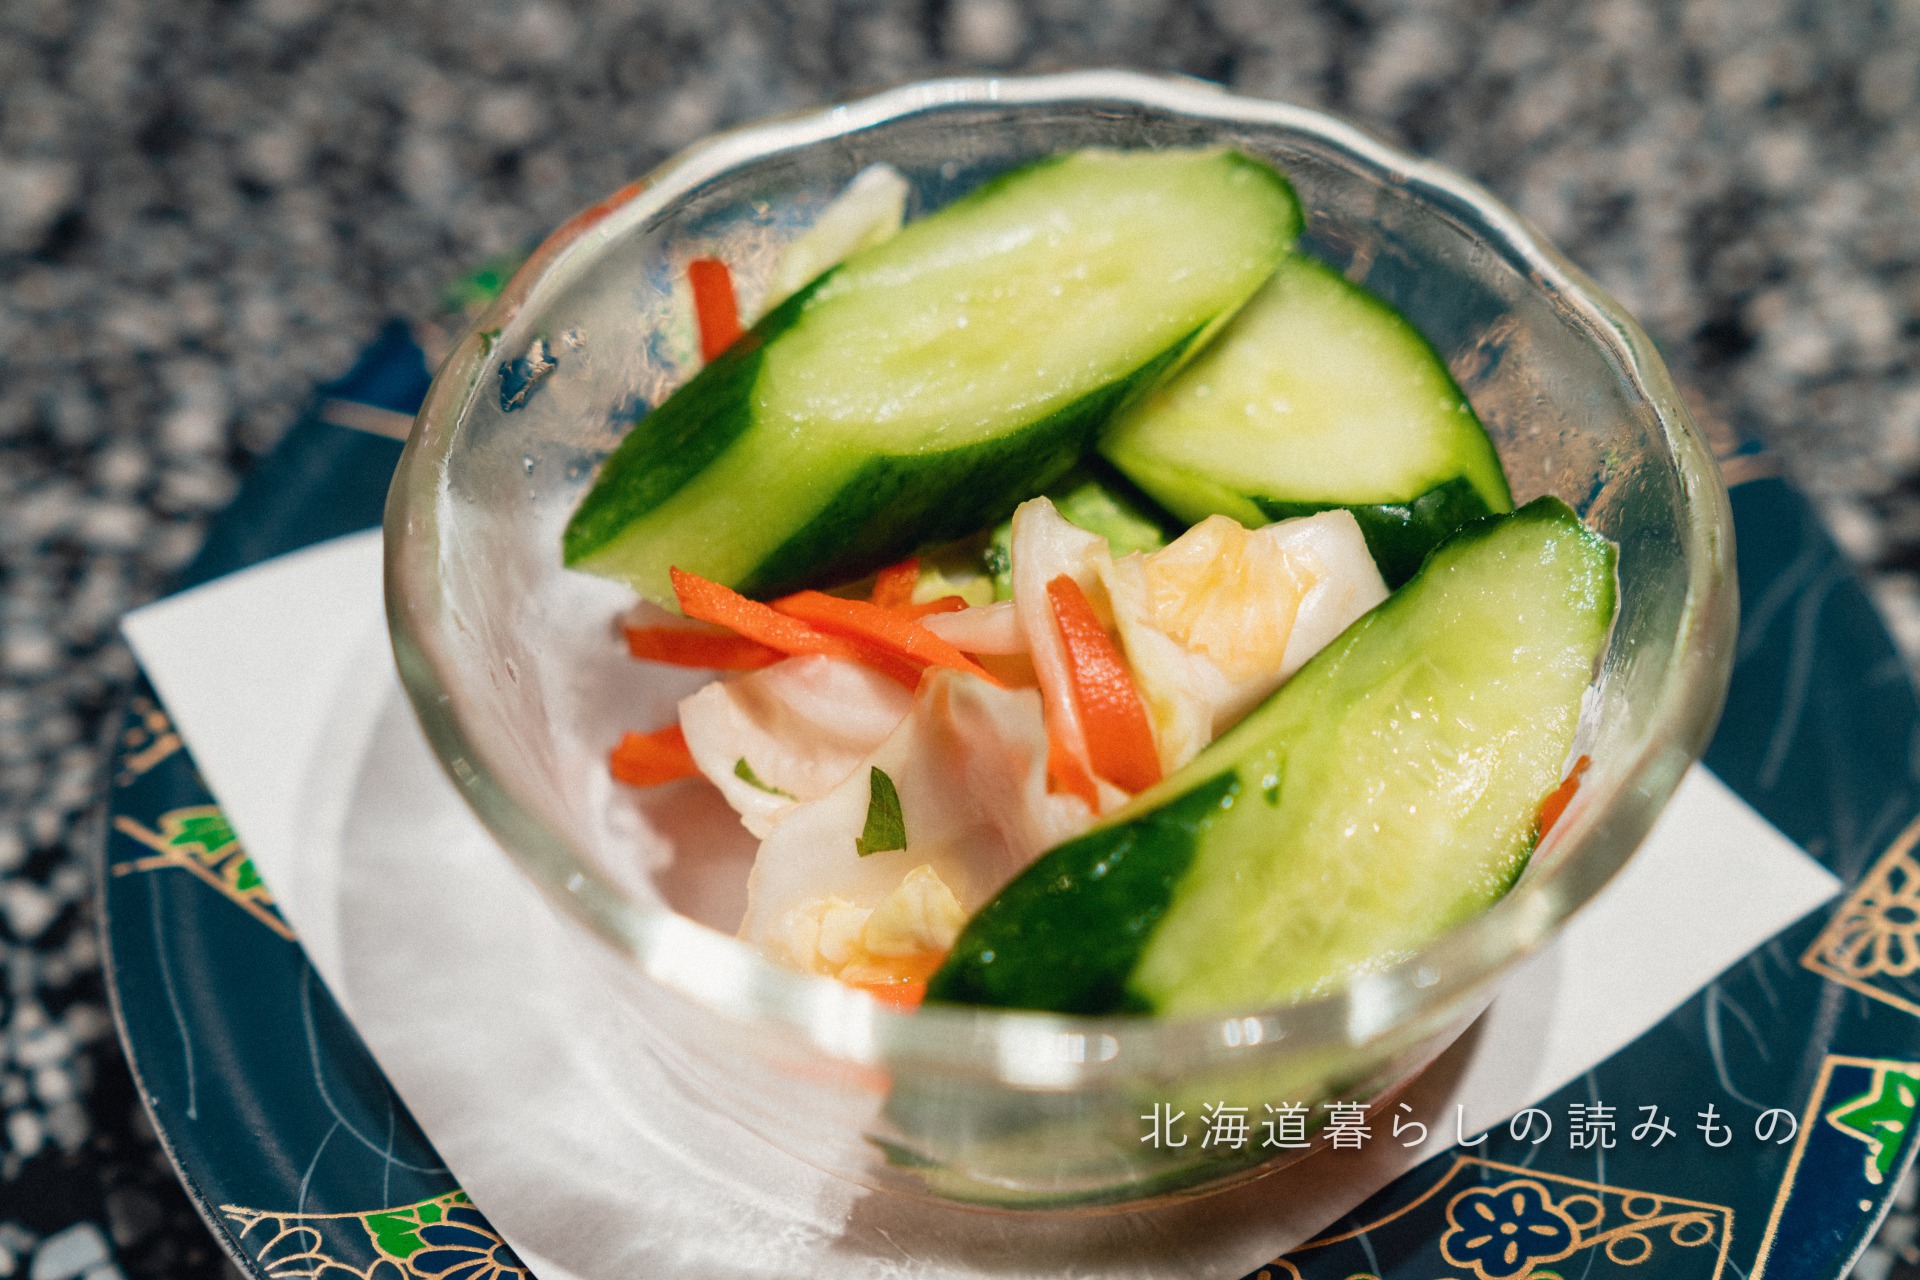 迴轉壽司根室花丸的菜單上的「Japanese Pickled Vegetables」